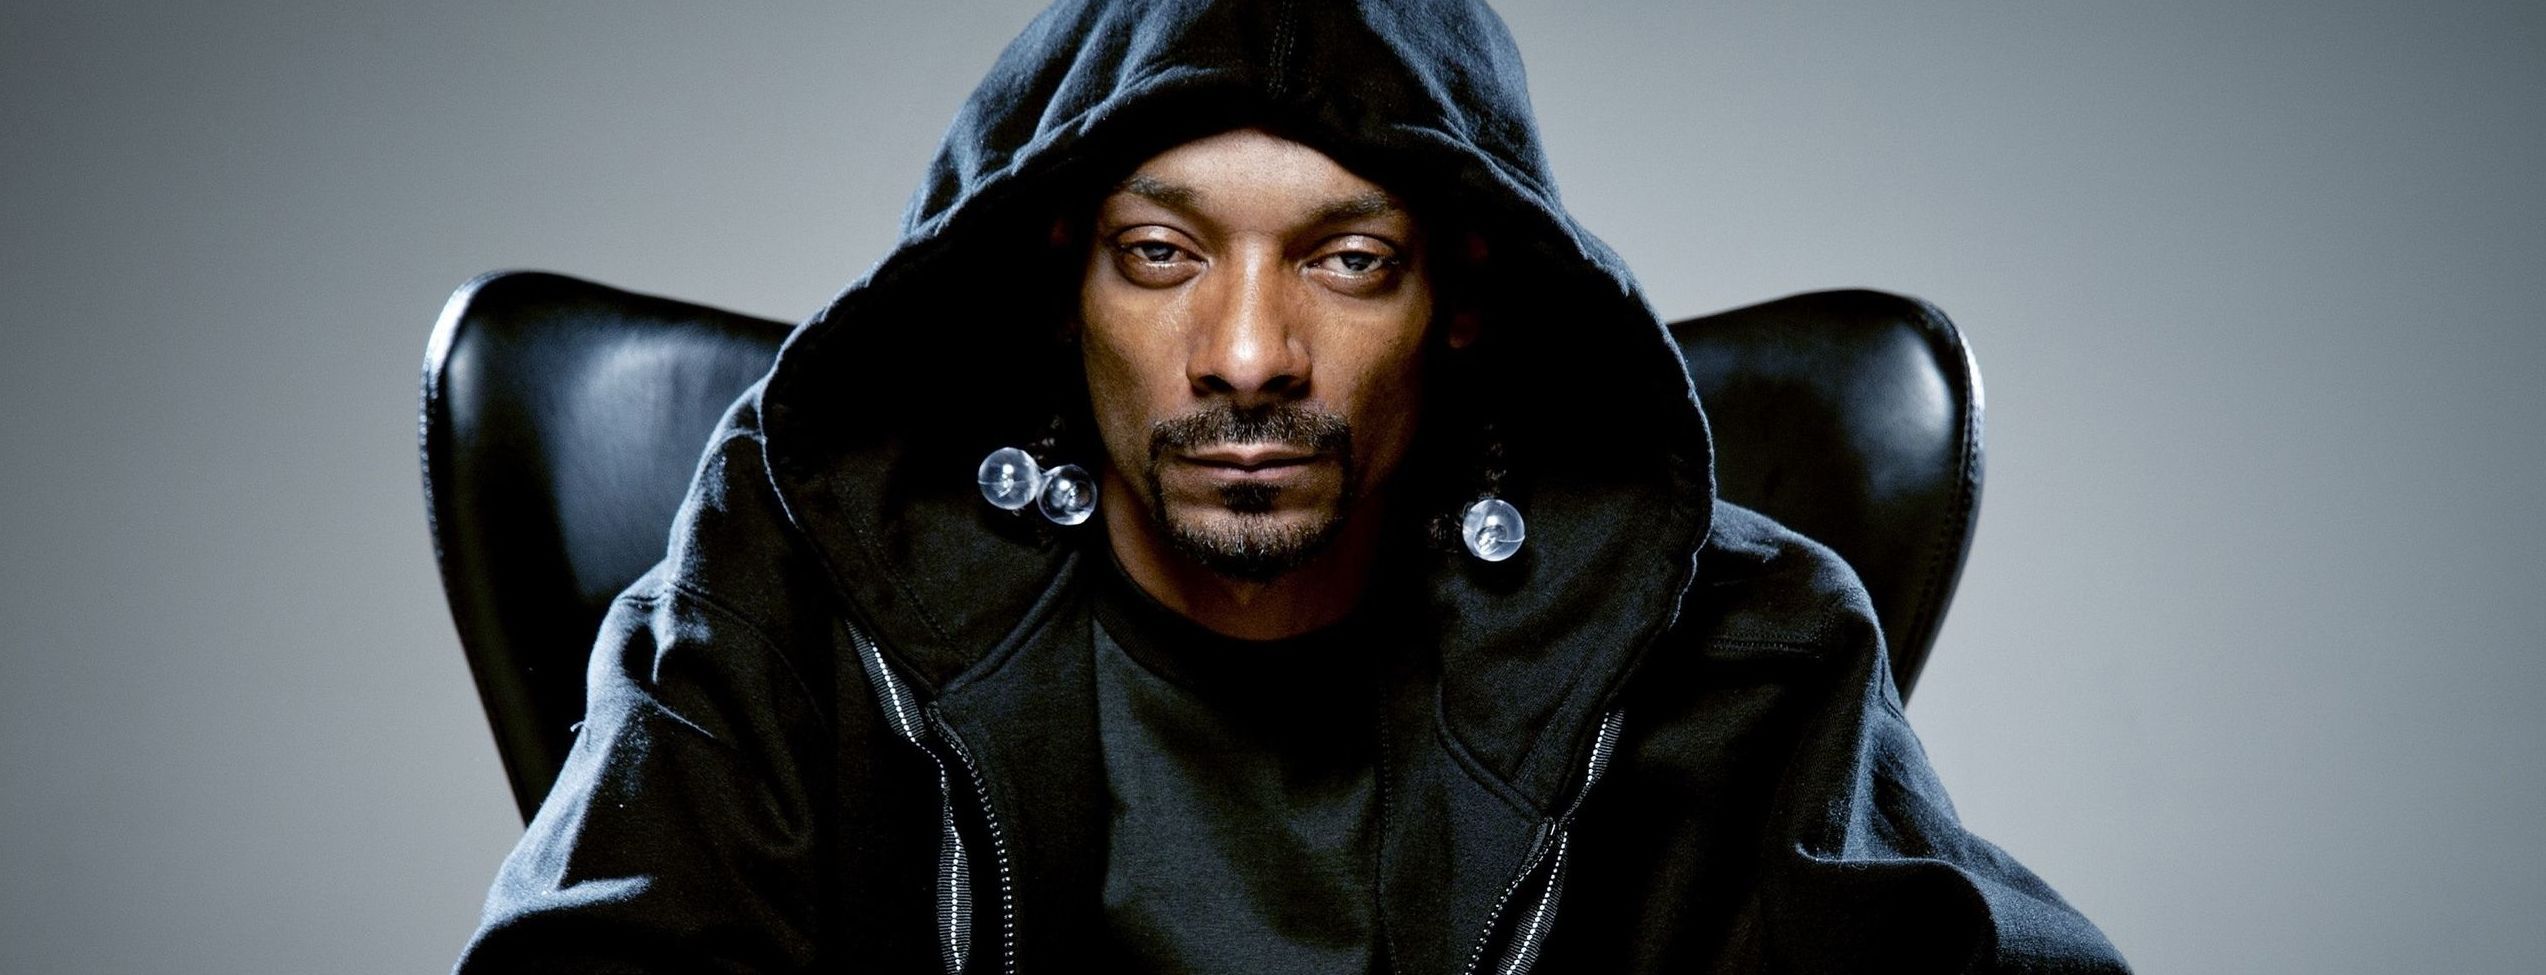 Онук репера Snoop Dogg помер через 10 днів після народження